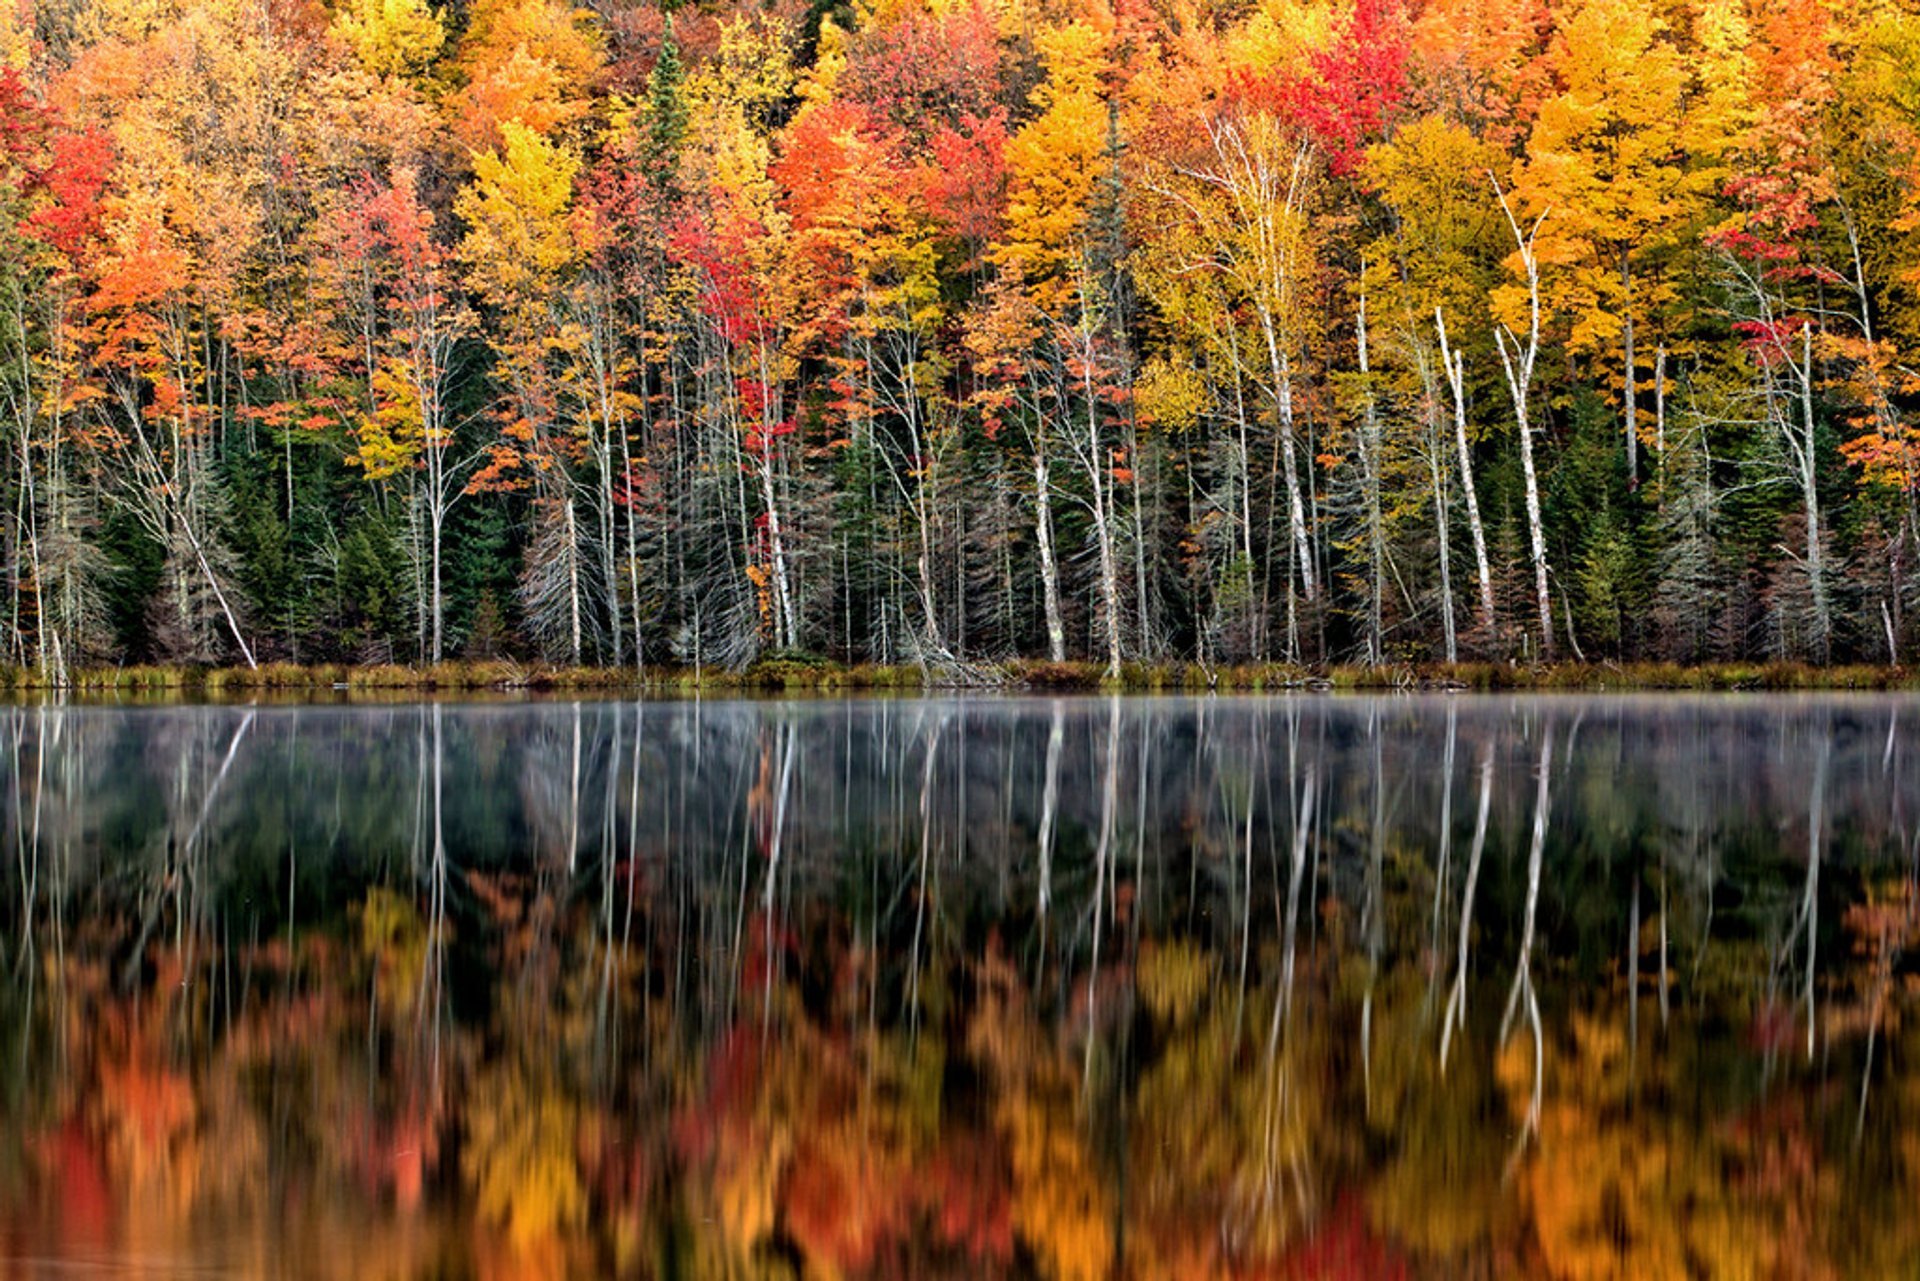 Upper Peninsula Fall Colors